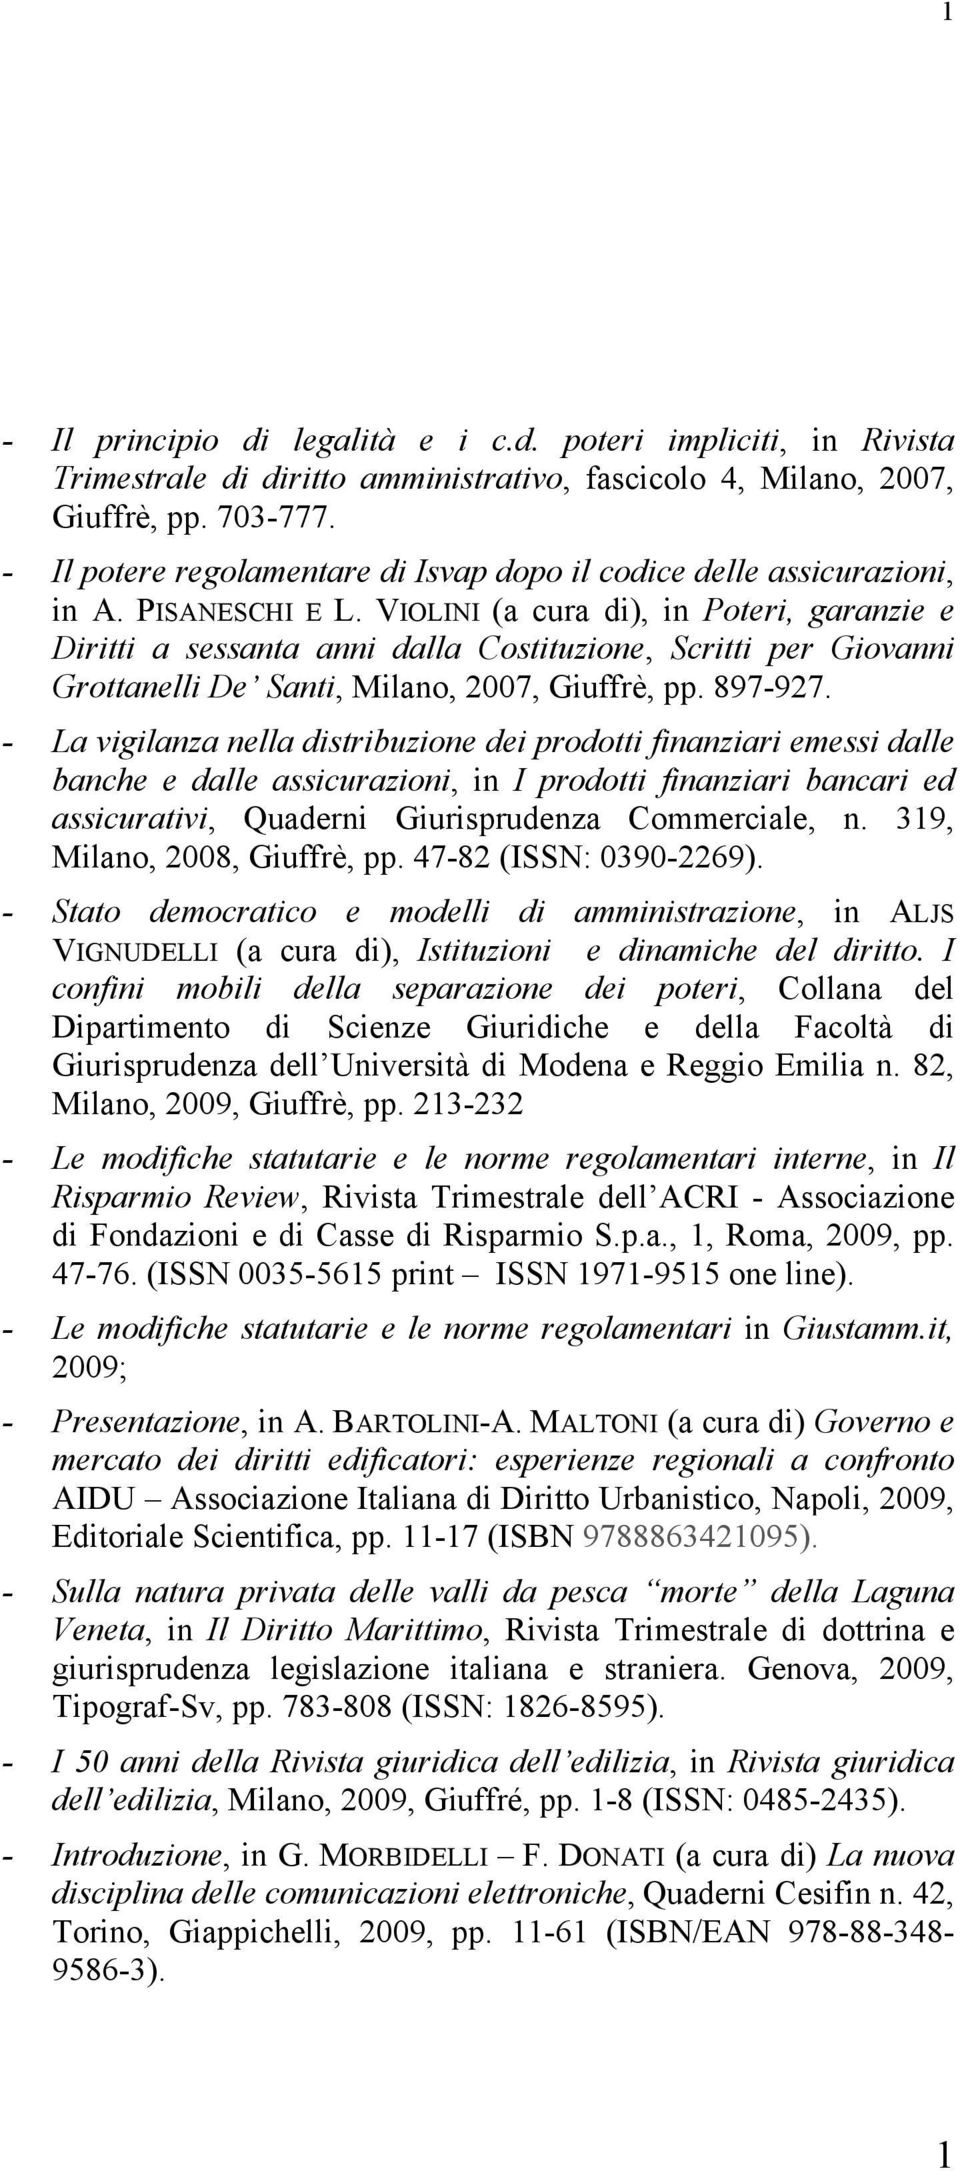 VIOLINI (a cura di), in Poteri, garanzie e Diritti a sessanta anni dalla Costituzione, Scritti per Giovanni Grottanelli De Santi, Milano, 2007, Giuffrè, pp. 897-927.